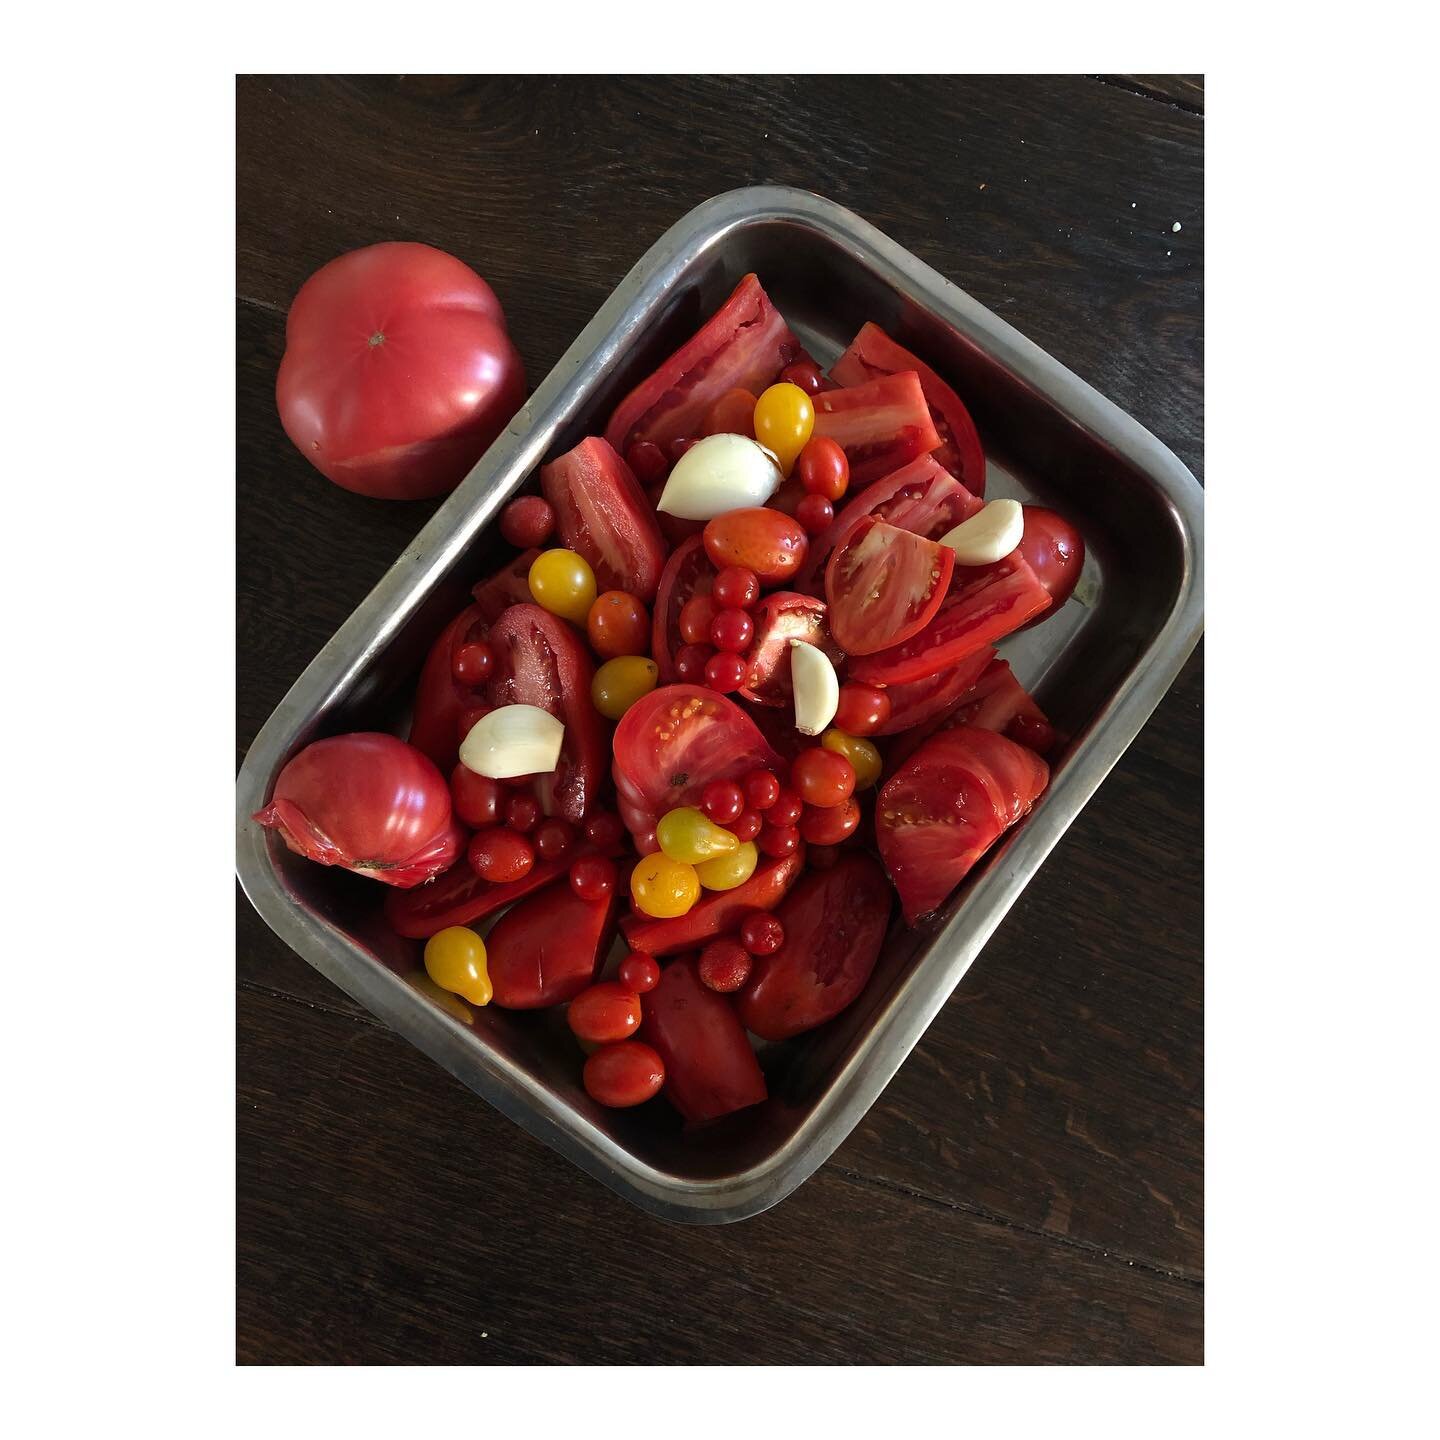 Hoy en &ldquo;Muchos tomates a punto de morir&rdquo;.
Salsa de tomates al horno 🍅